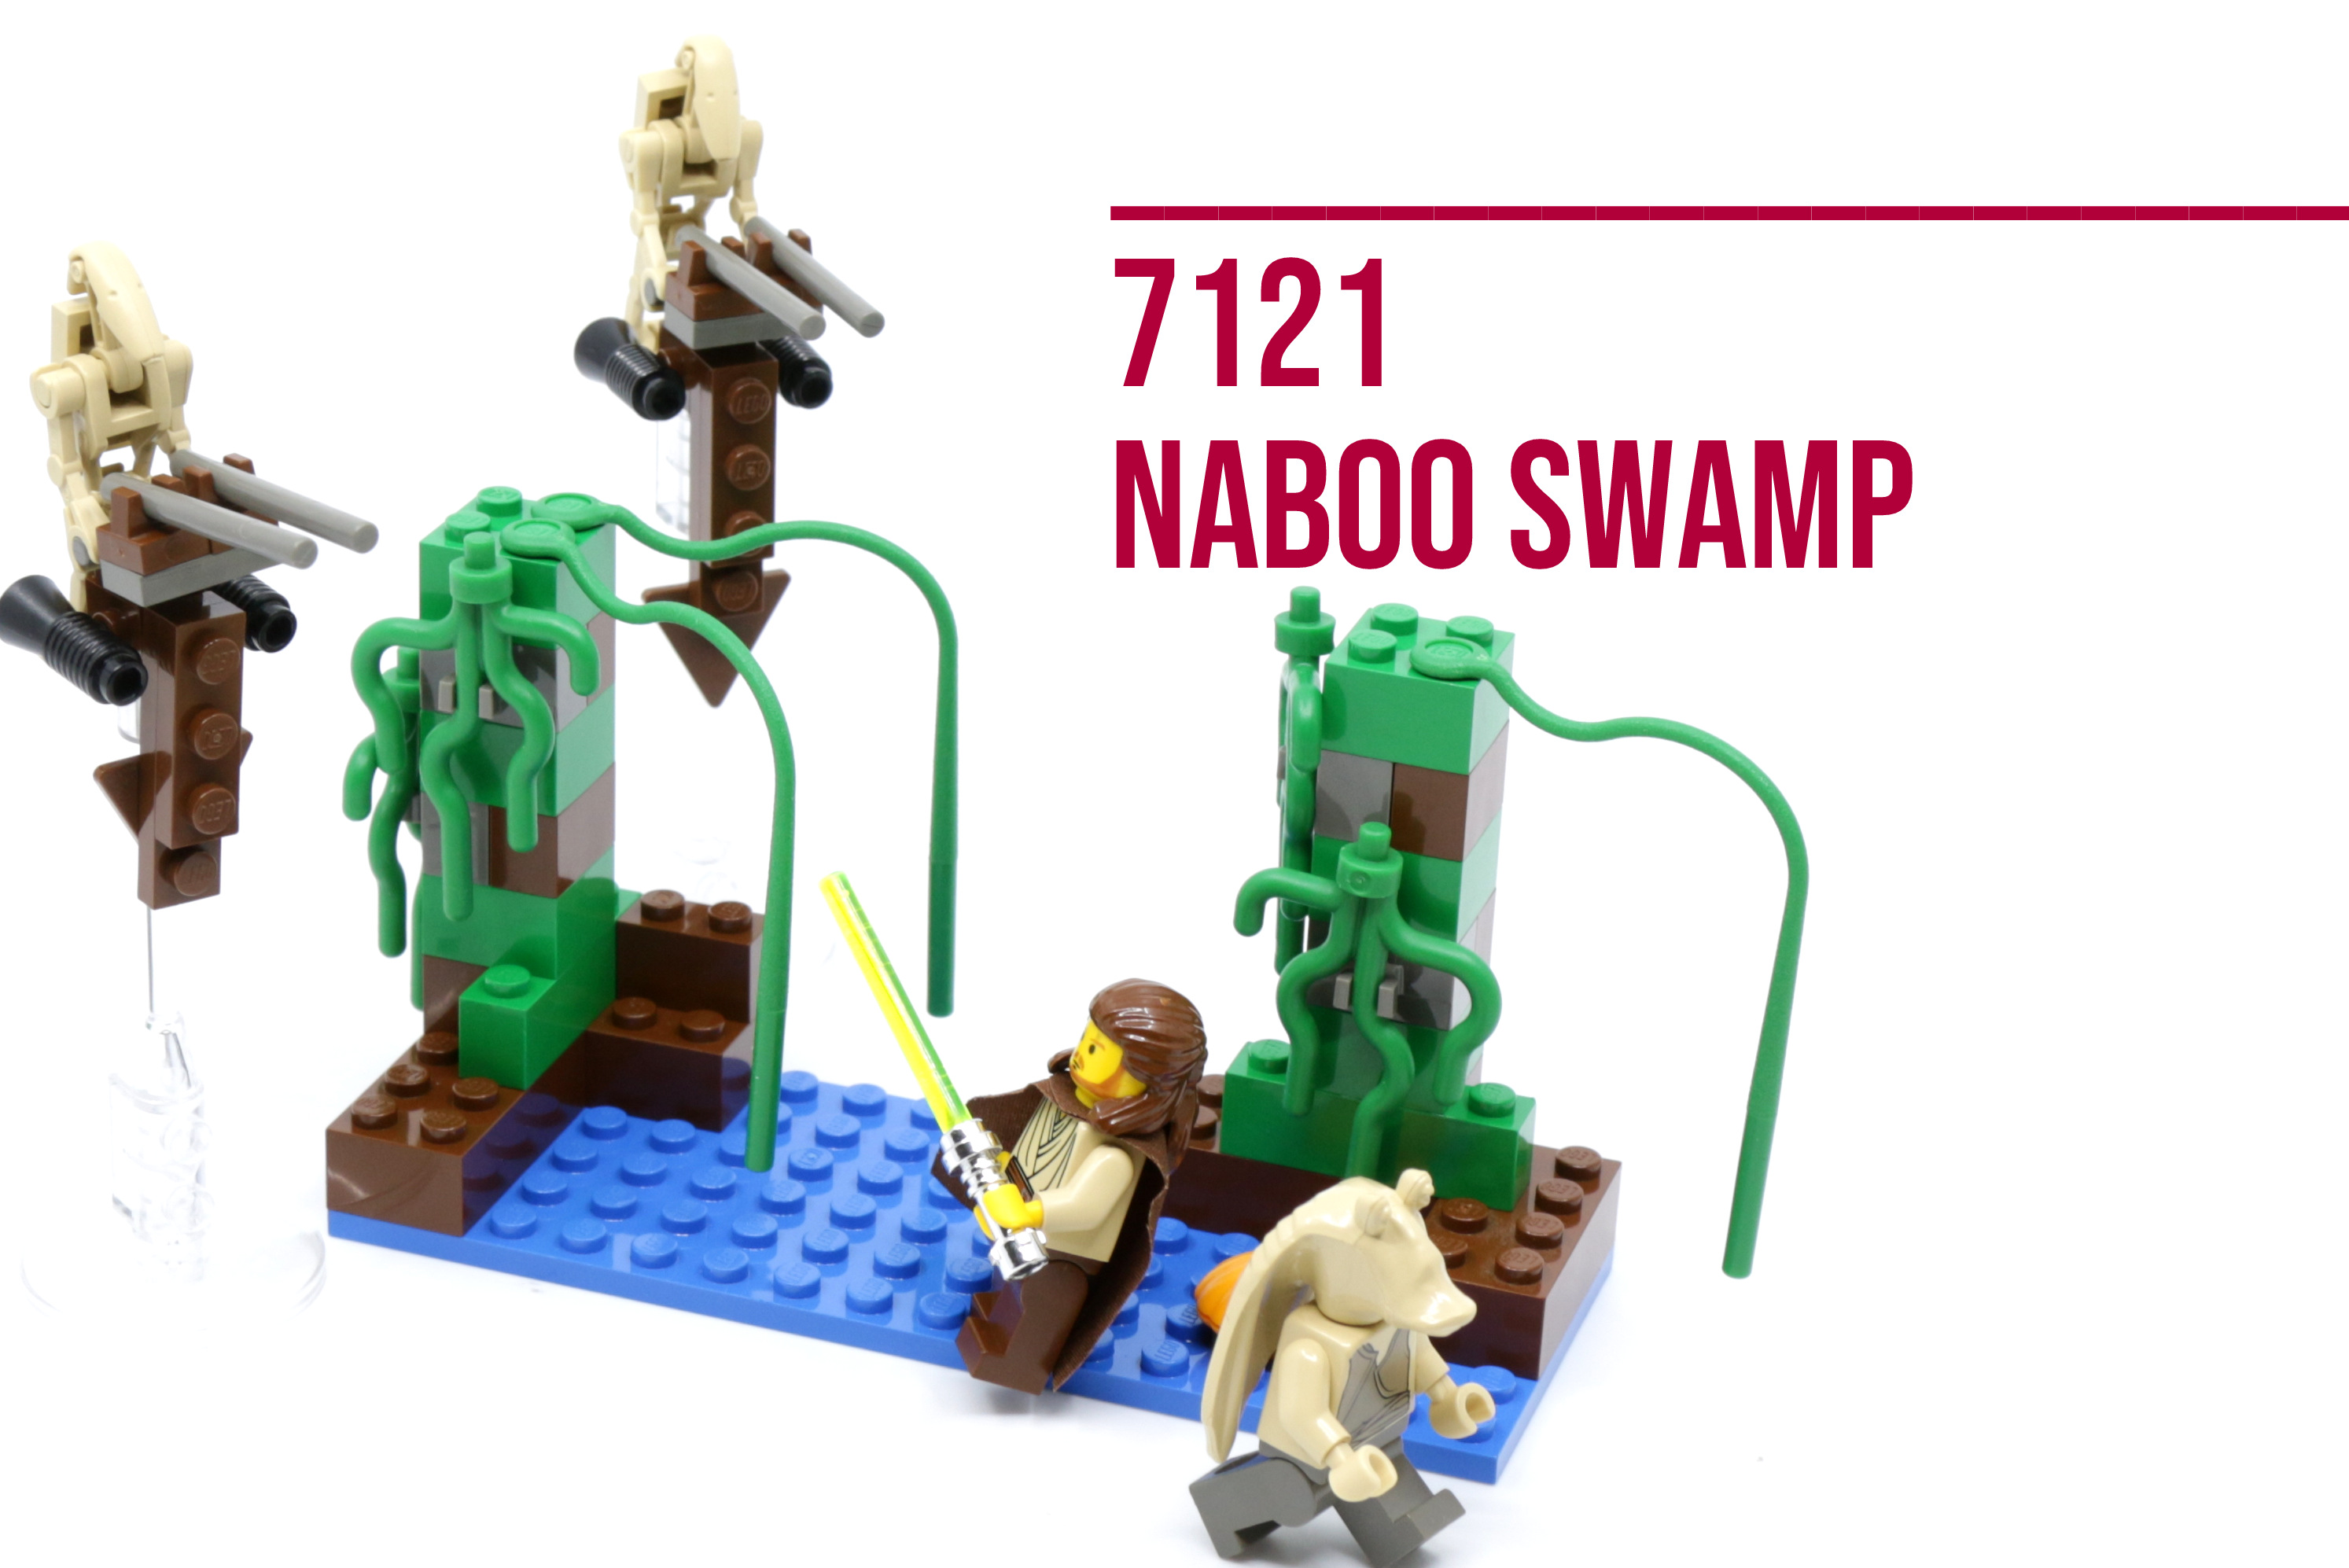 Lego Star Wars 75308 - R2-D2 - Hub Hobby